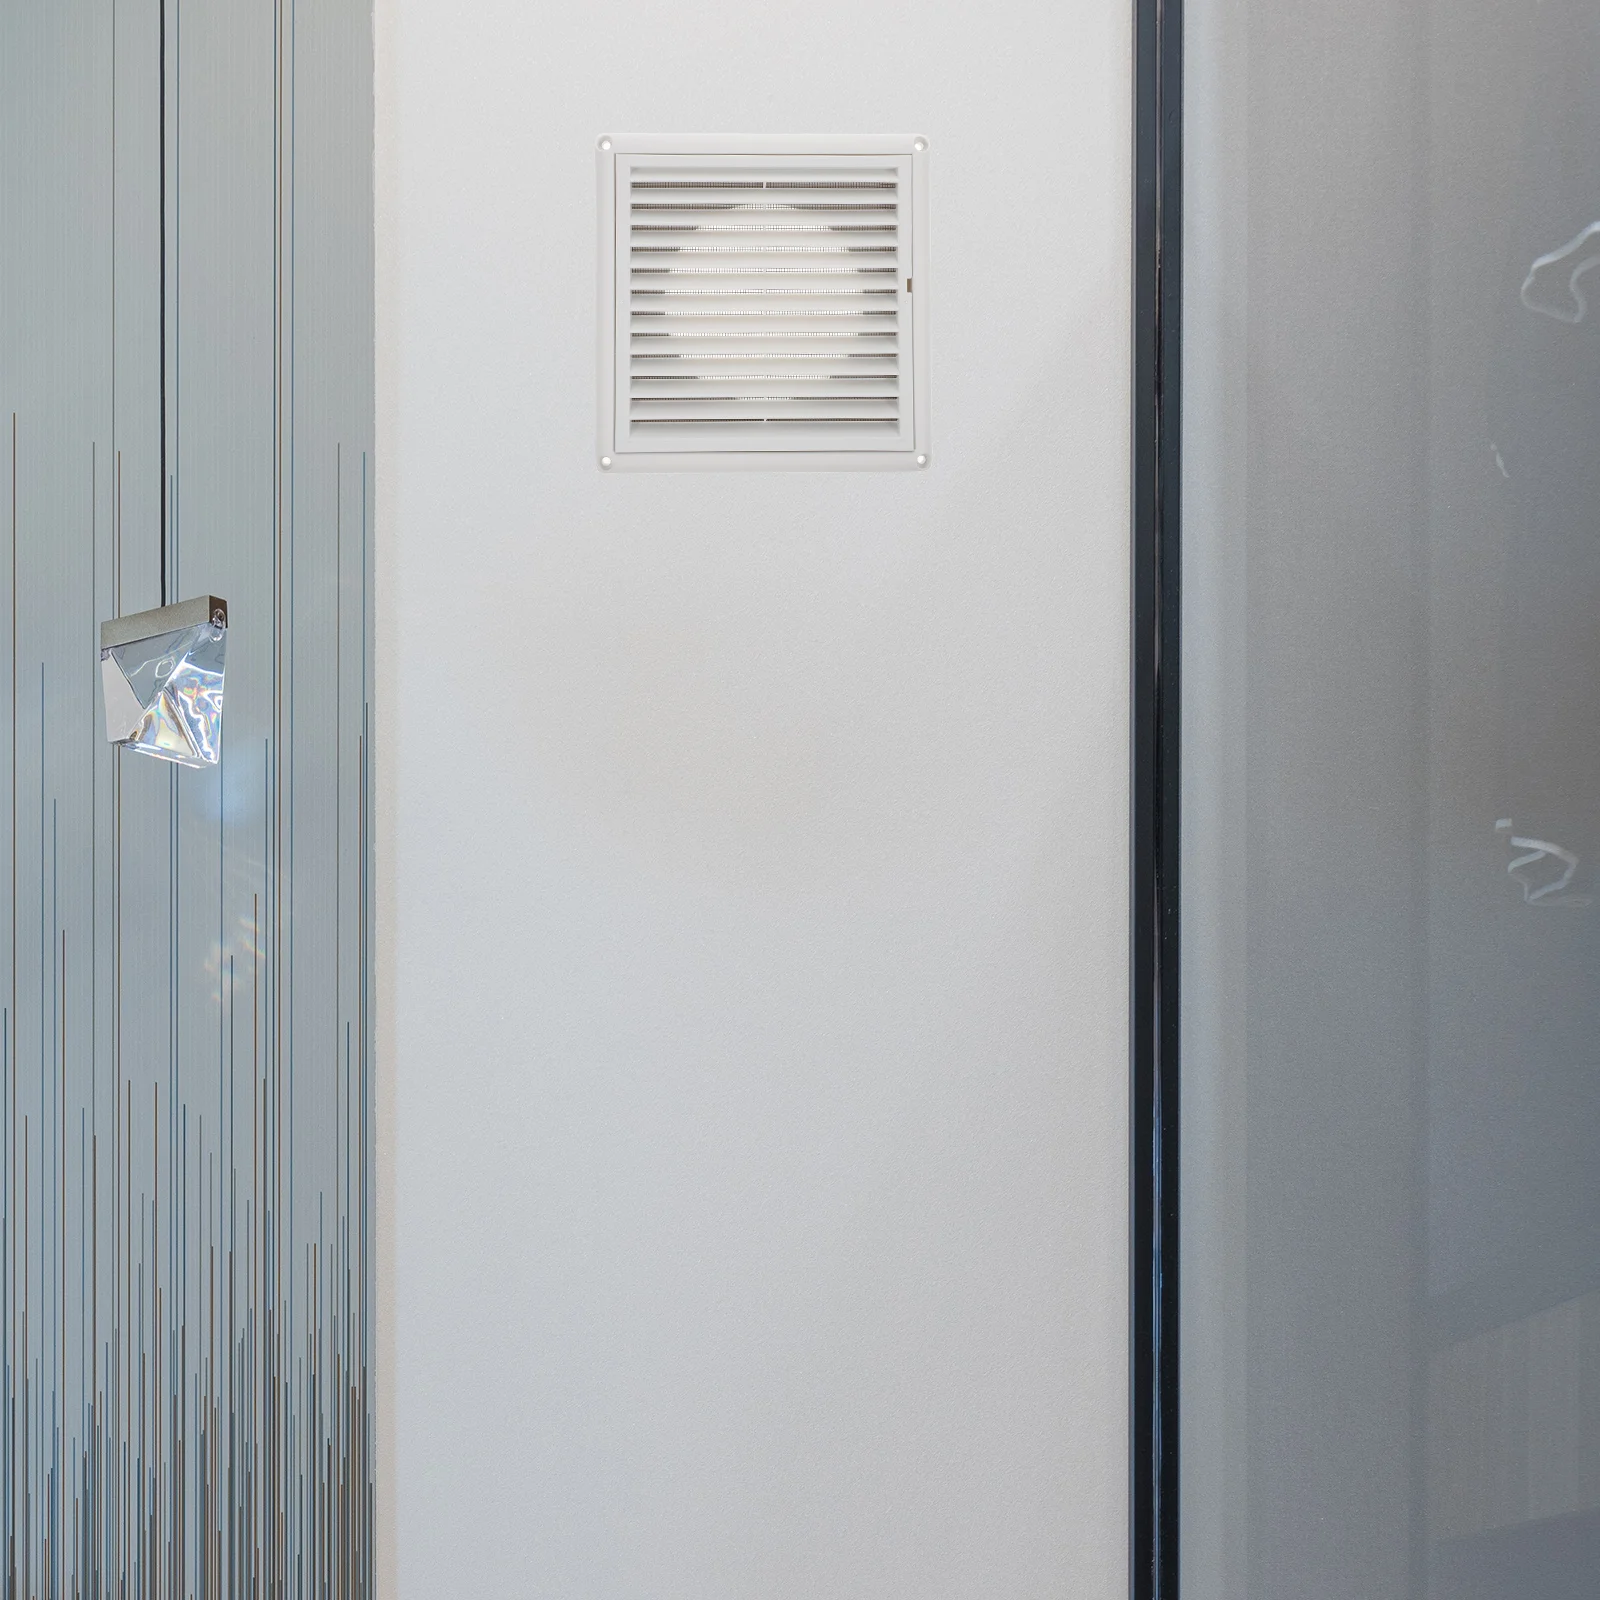 

Ceiling Grid Air Air Conditioner Deflectors Cover Regulator Furnace Deflector Covers Floor Deflectors Home